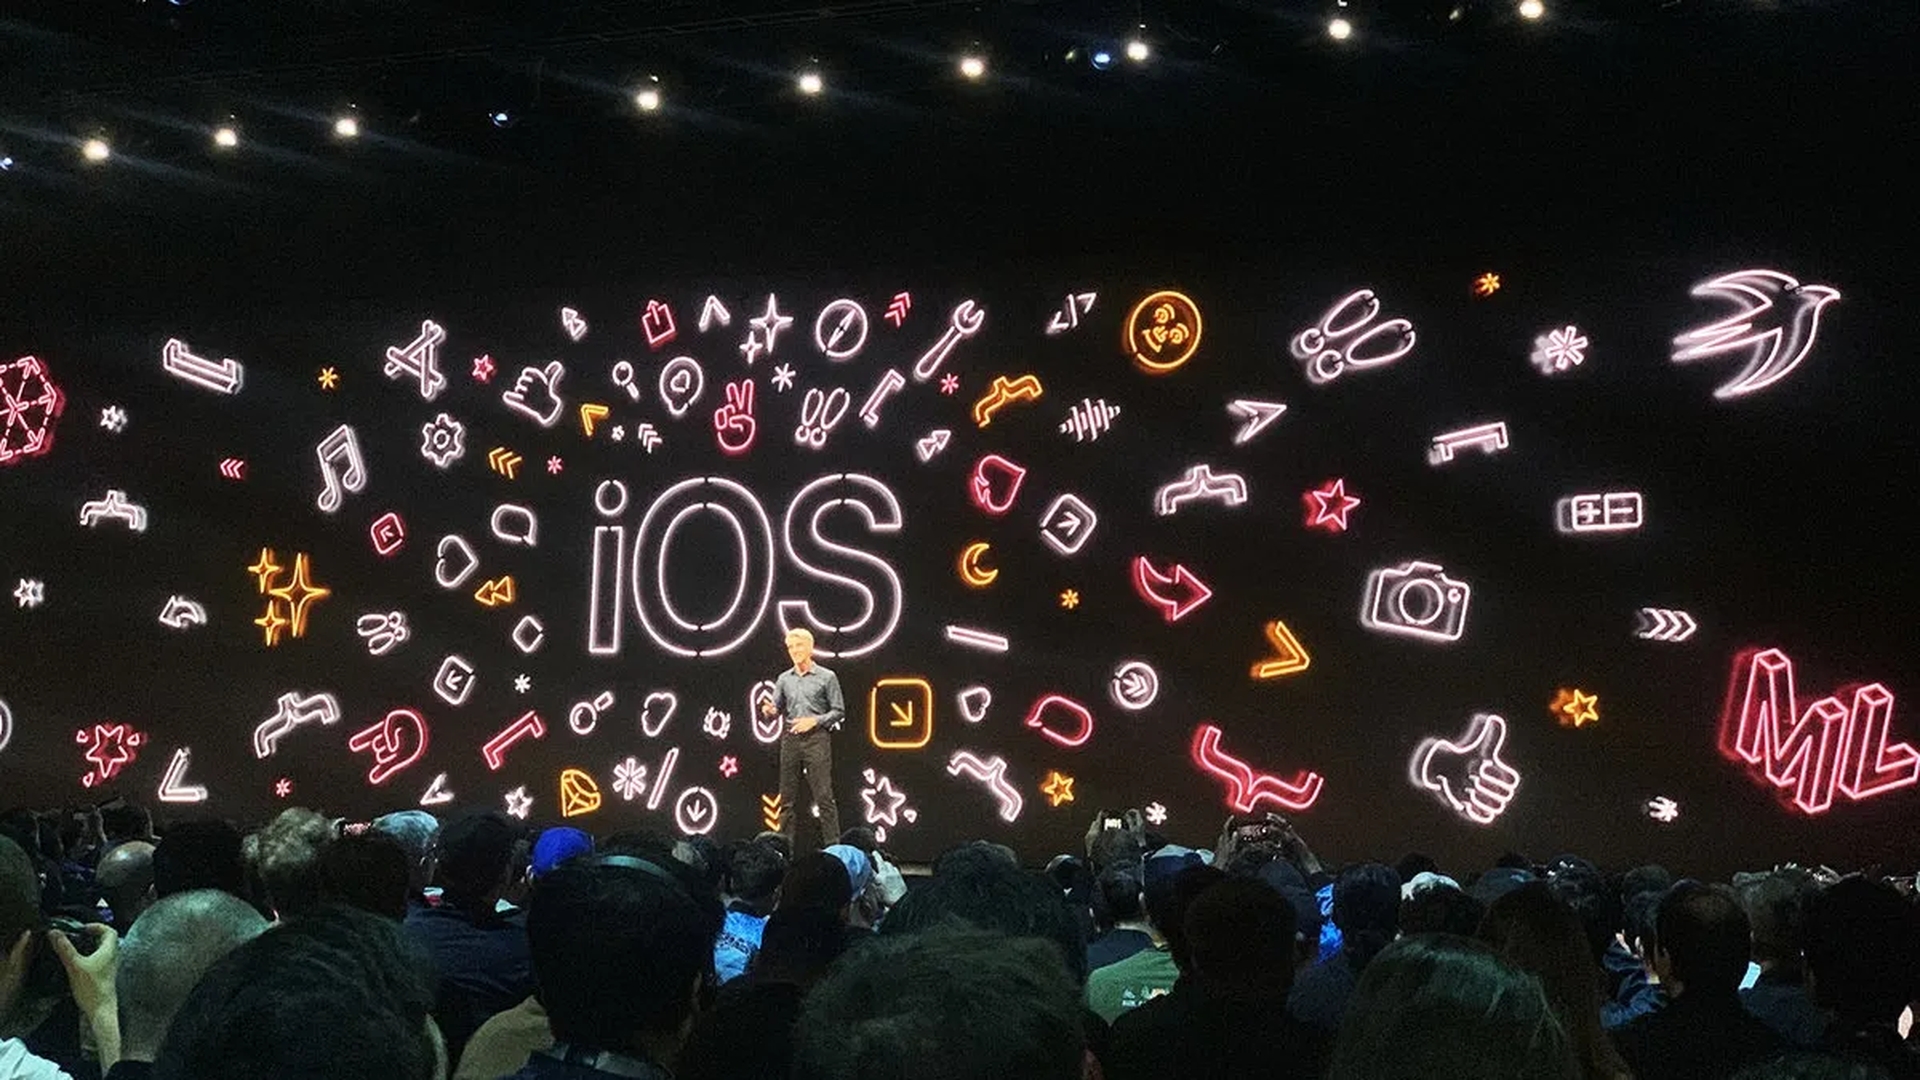 Aujourd'hui, nous couvrirons quand est le discours d'ouverture de la WWDC 2022 et comment le regarder, afin que vous ne manquiez pas l'événement annuel au cours duquel Apple dévoile de nouvelles fonctionnalités pour ses appareils.